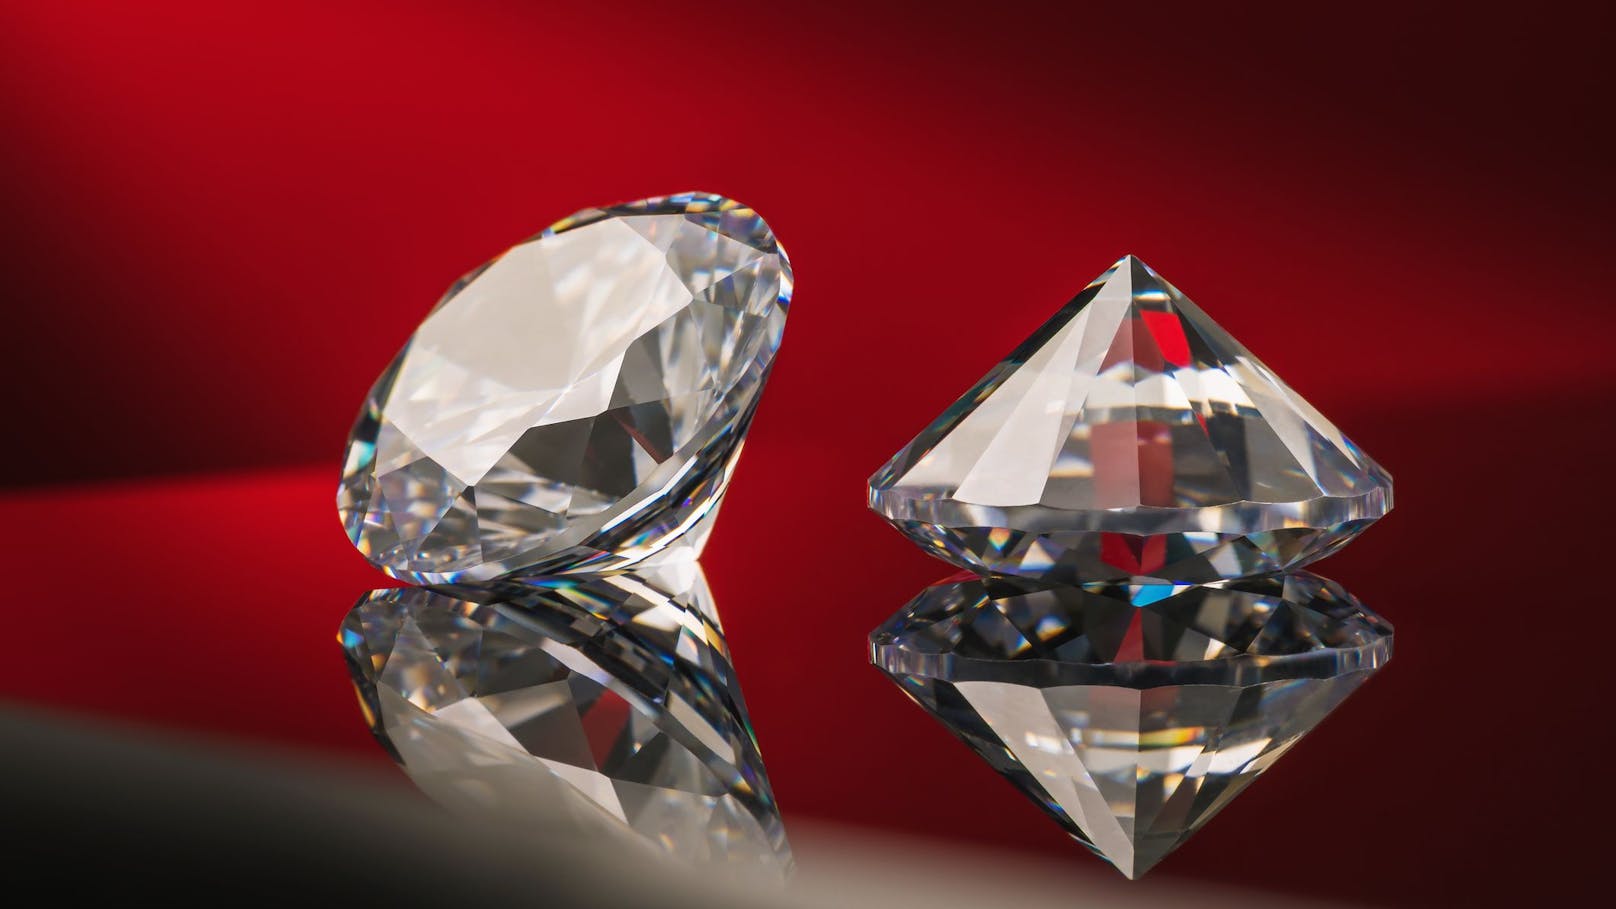 Häftling bestellte in Zelle Diamanten um 2,5 Mio. Euro